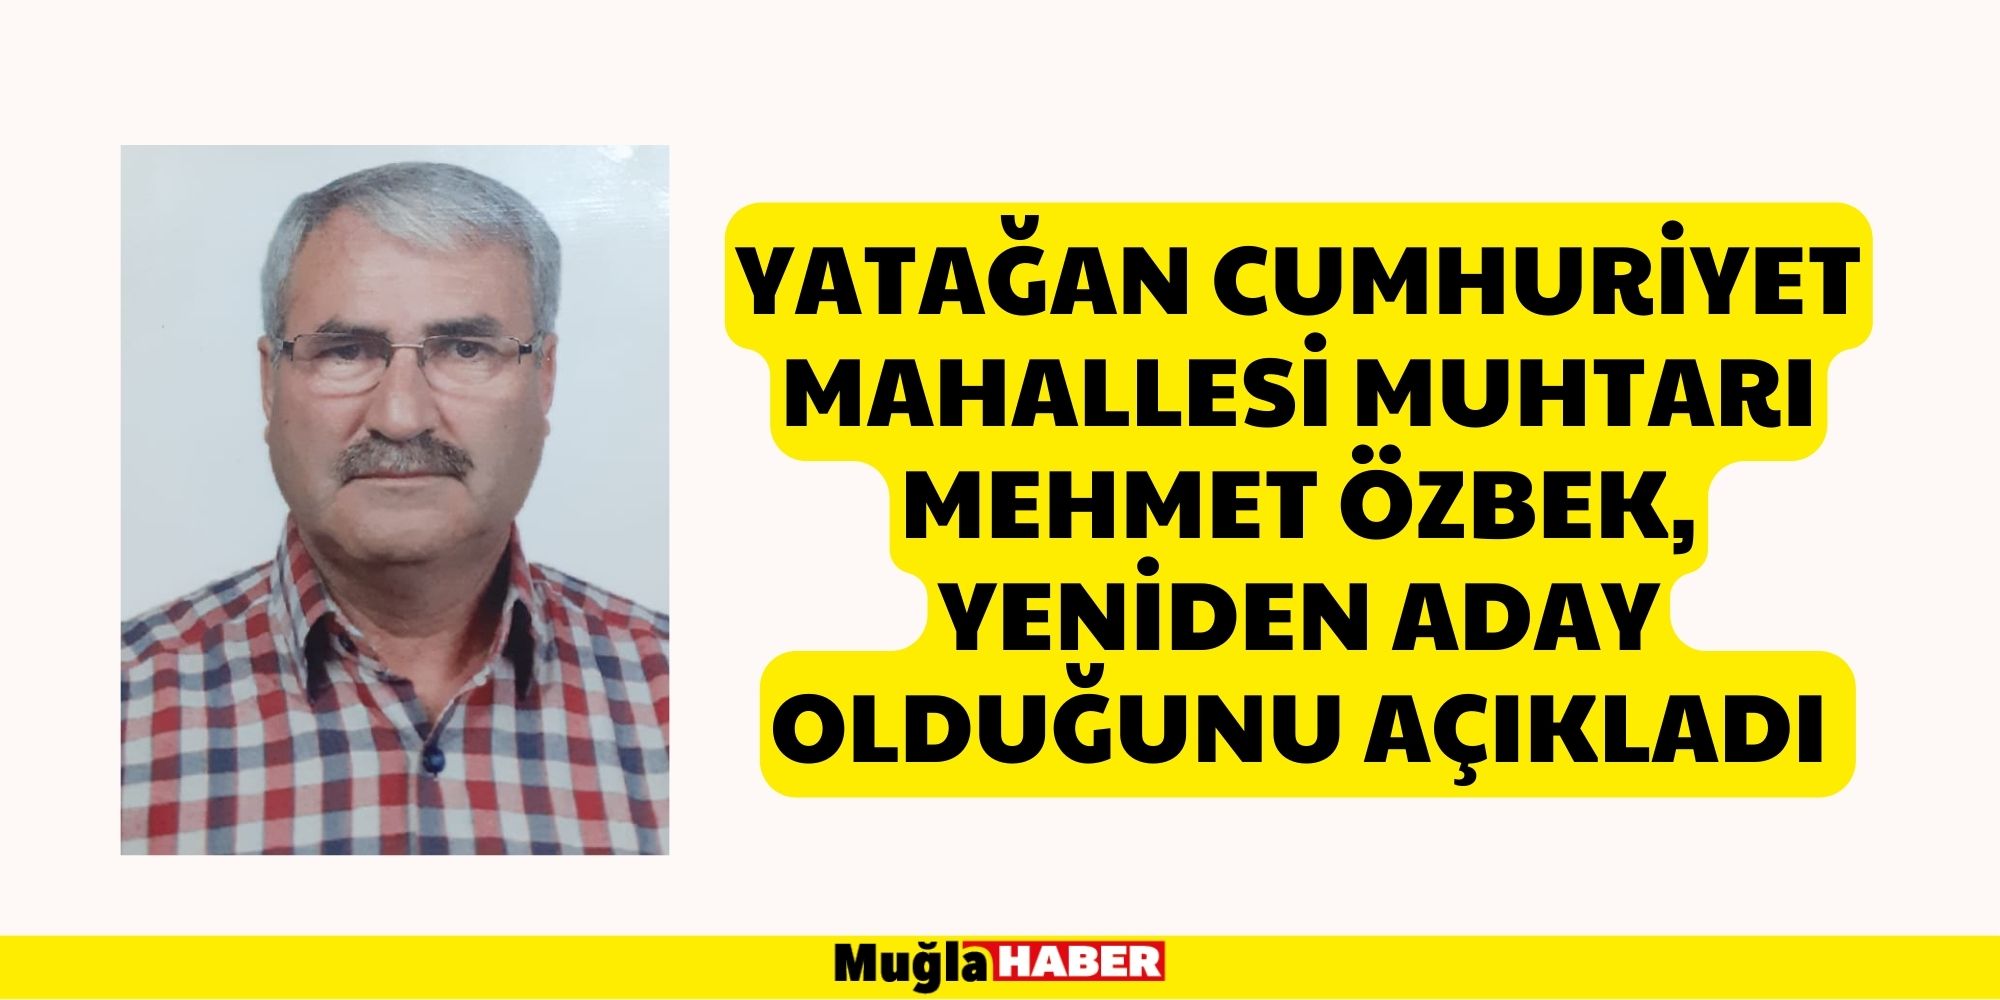 Yatağan Cumhuriyet Mahallesi Muhtarı Mehmet Özbek, Yeniden Aday Olduğunu Açıkladı